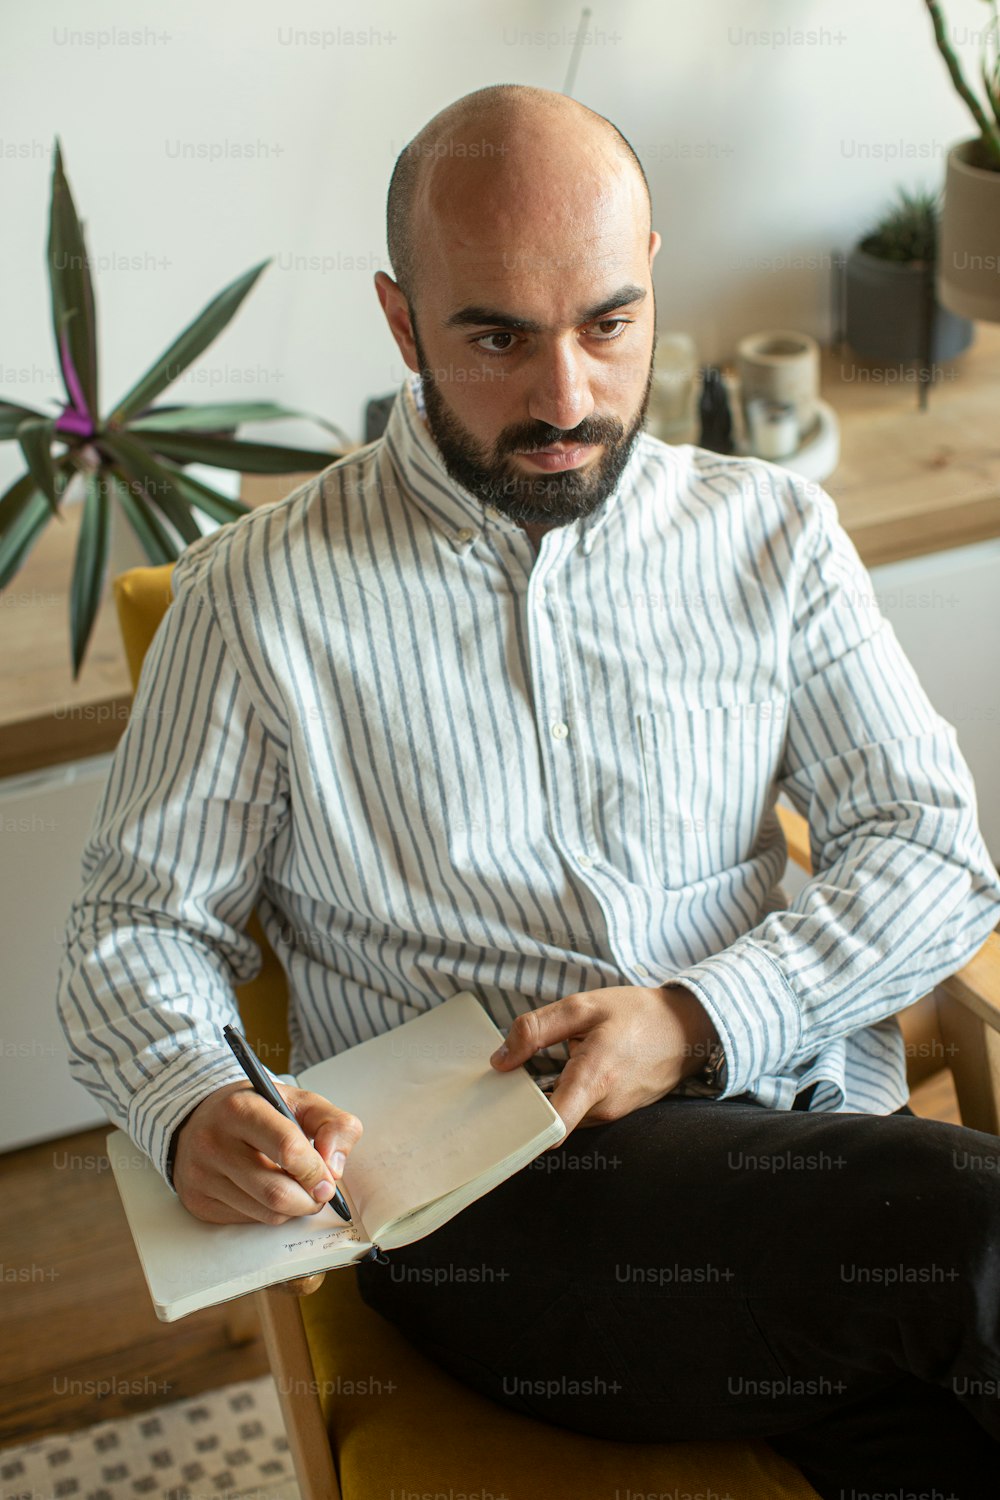 Un hombre sentado en una silla escribiendo en un pedazo de papel